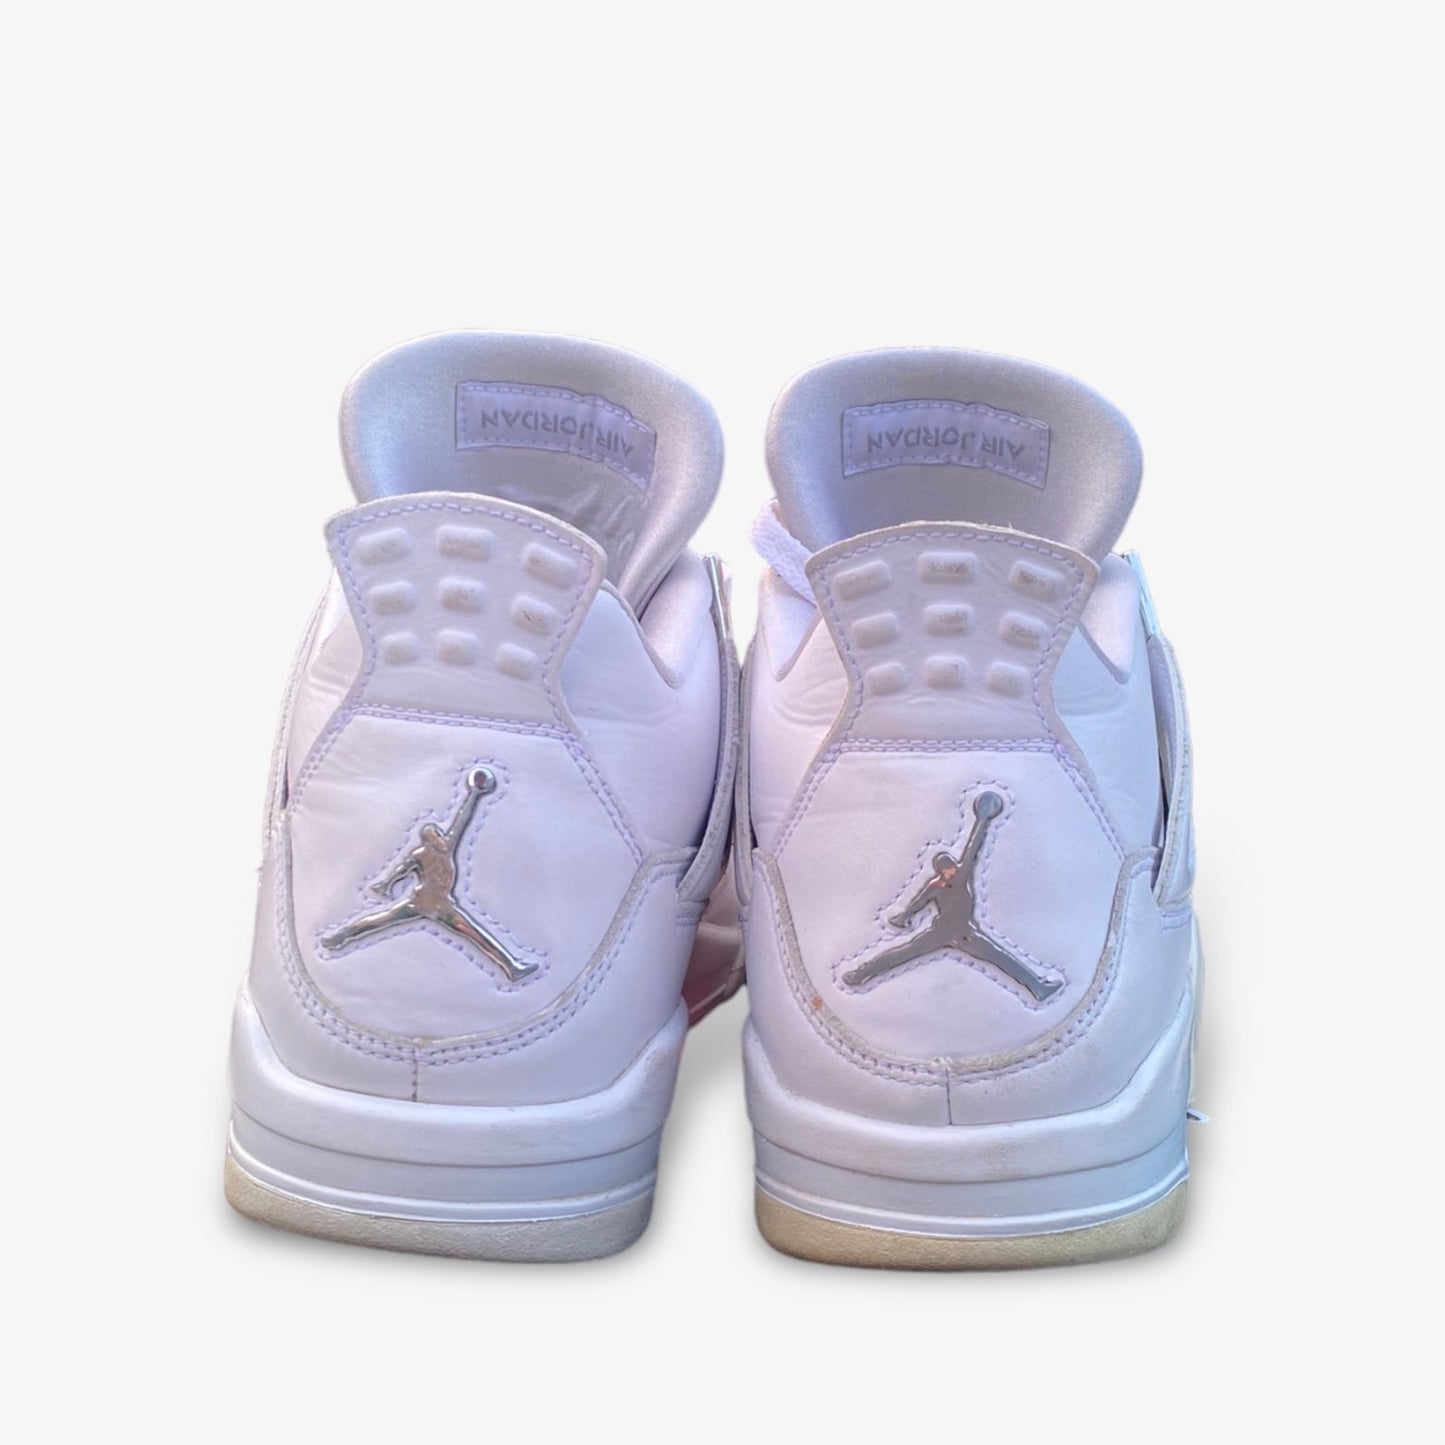 Air Jordan 4 “Pure Money” (2017)